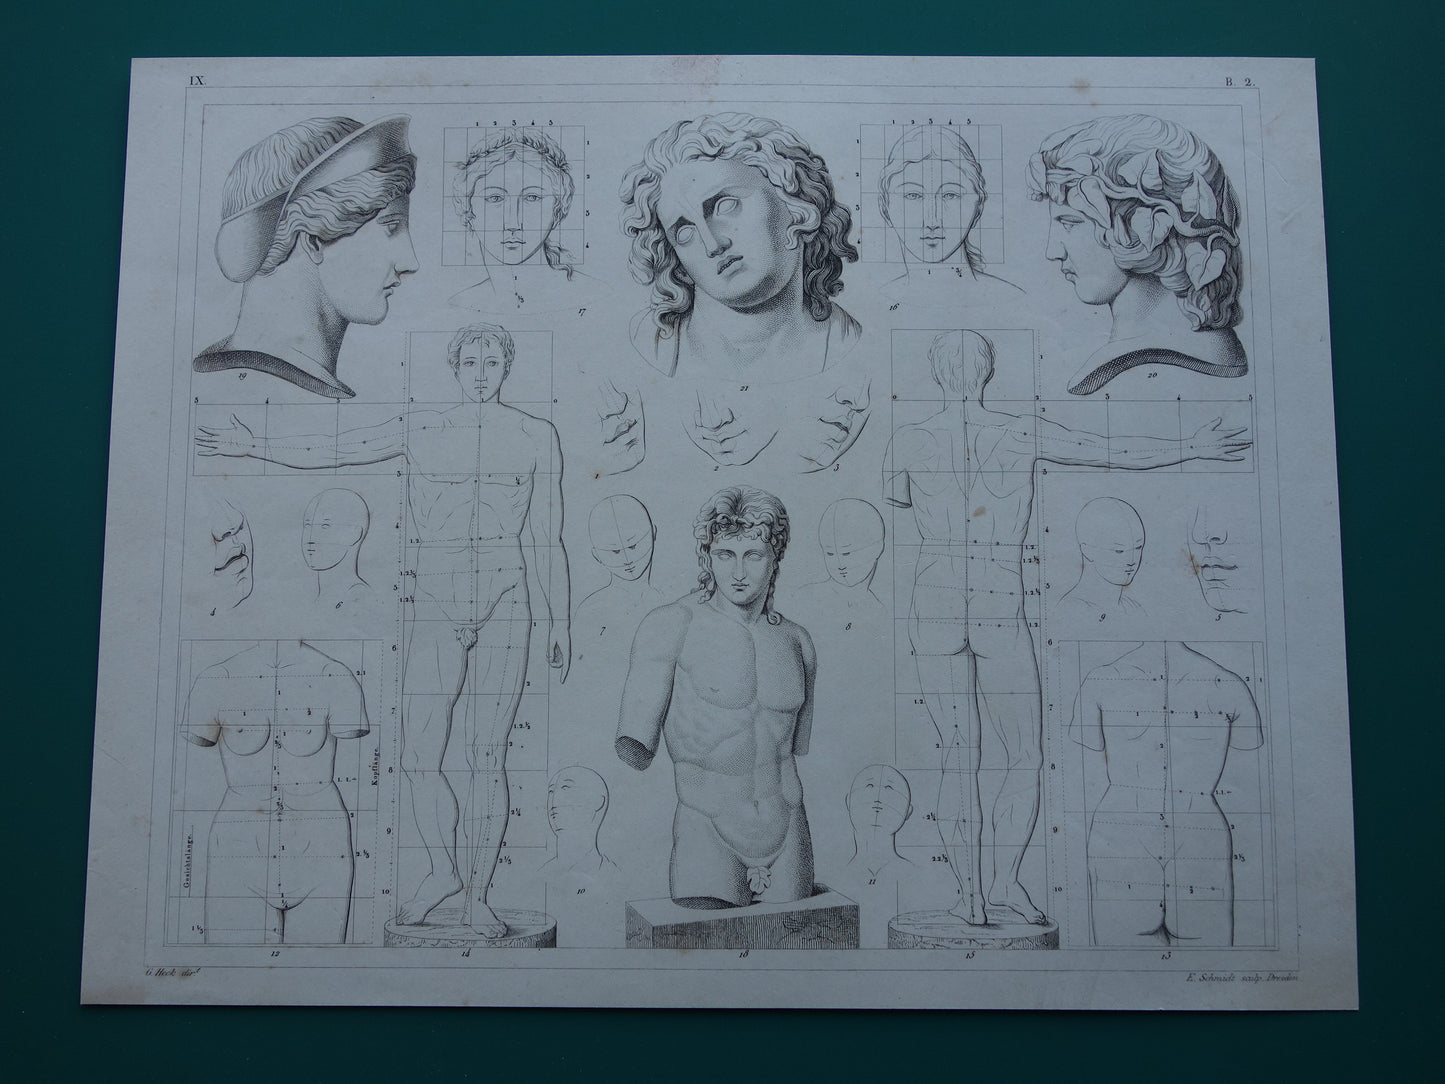 Oude prent schilderkunst theorie proporties van het menselijk lichaam originele antieke illustratie vintage prints